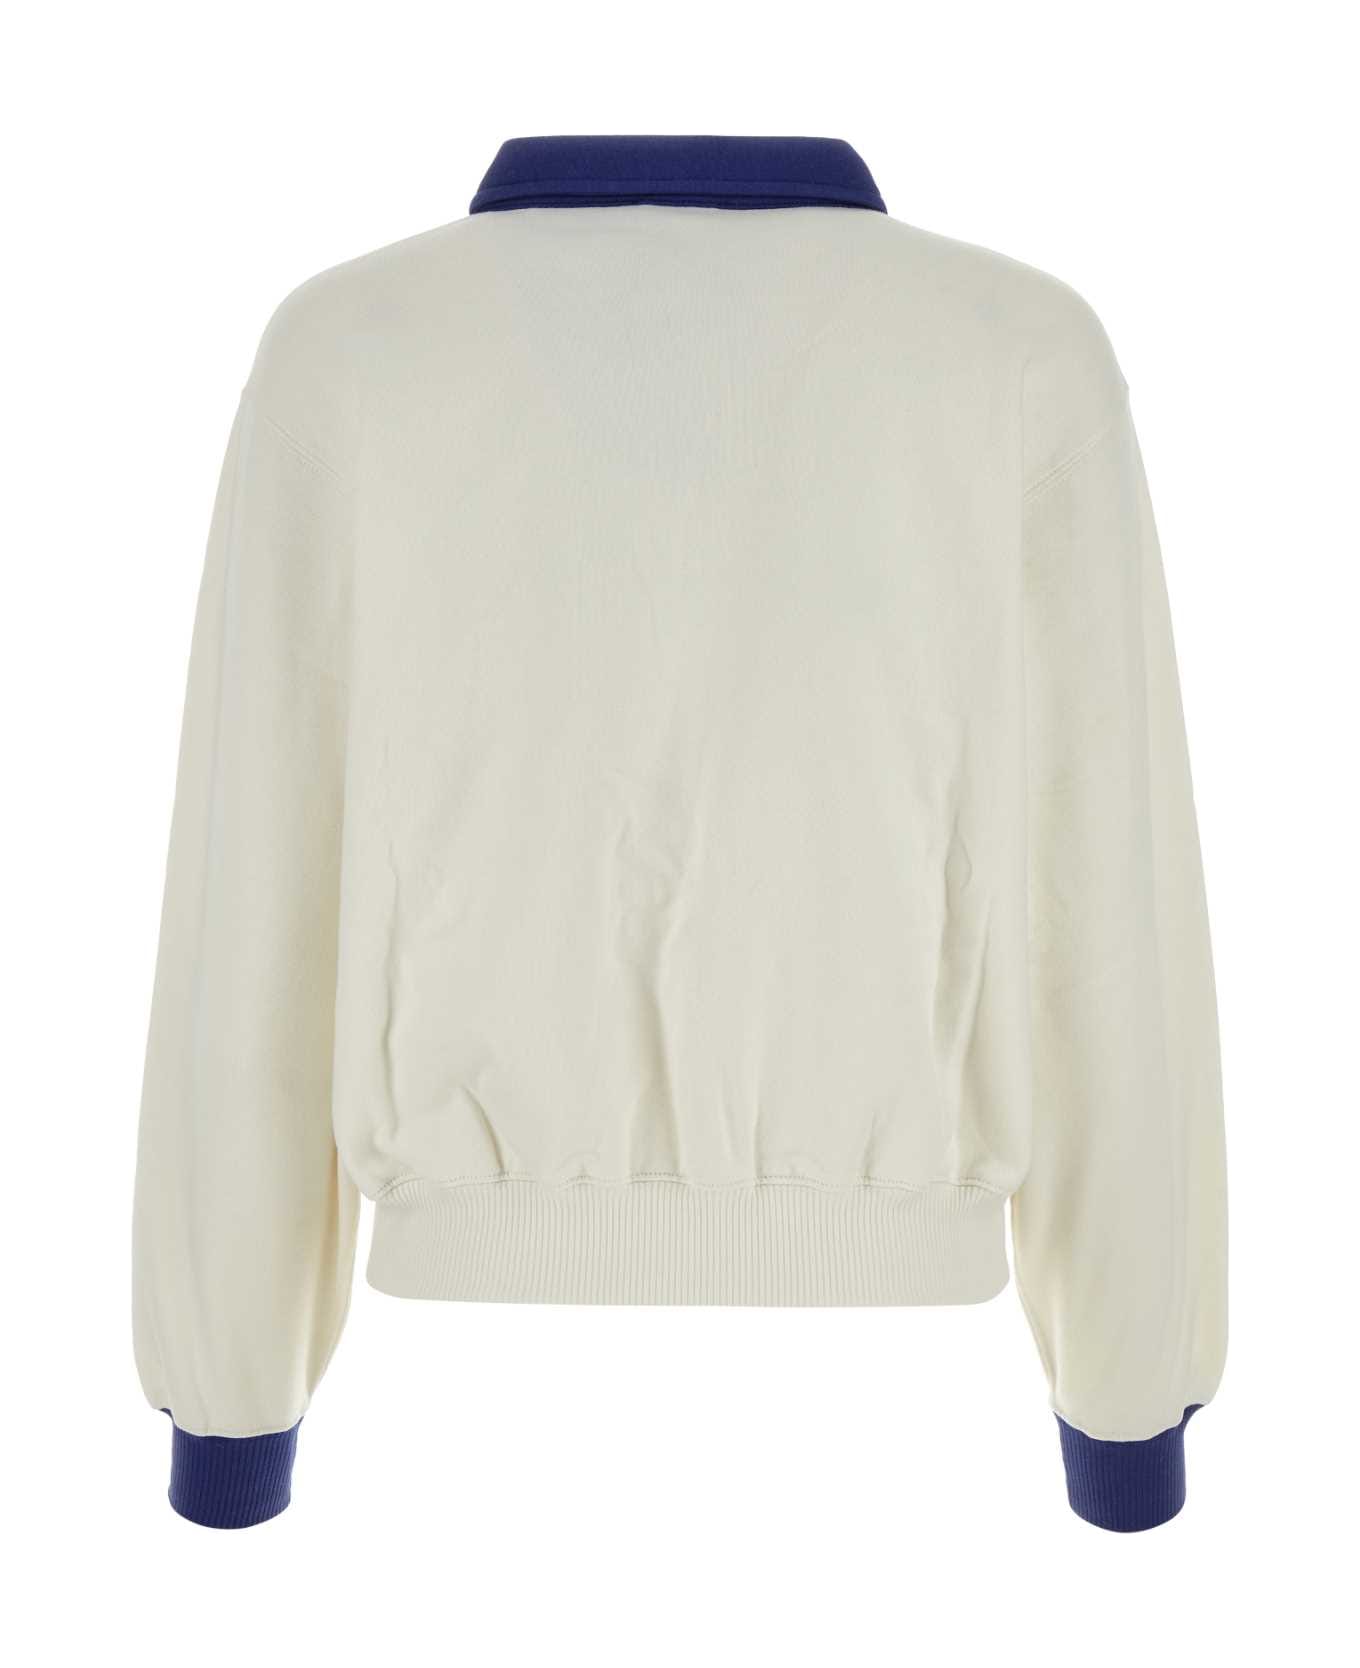 Polo Ralph Lauren White Cotton Blend Polo Shirt - DECKWASHWHITE ポロシャツ